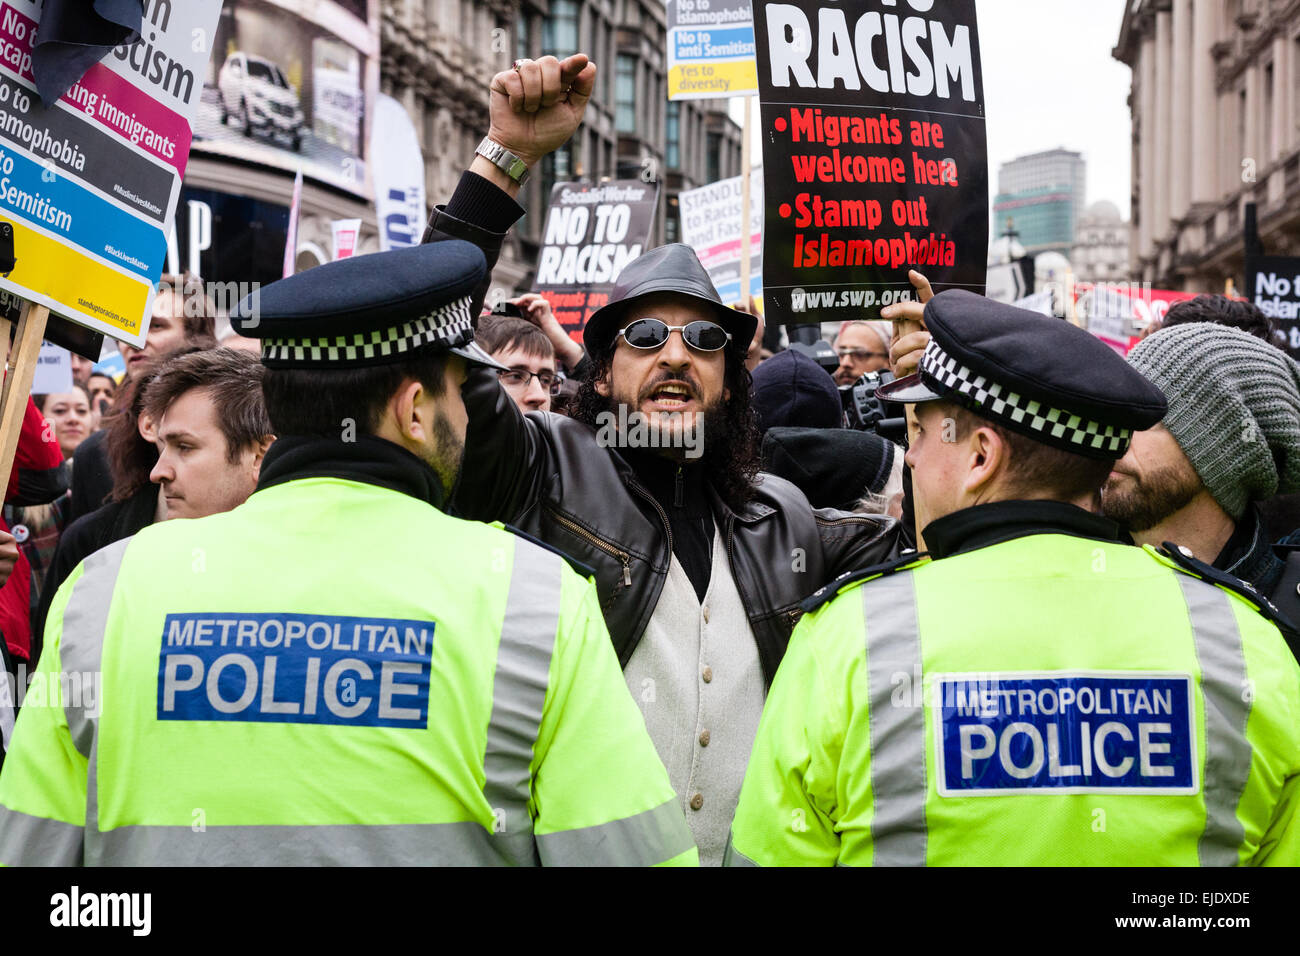 Un anti-razzismo demonstrator grida verso i sostenitori del gruppo di estrema destra la Gran Bretagna prima durante un rally nel centro di Londra Foto Stock